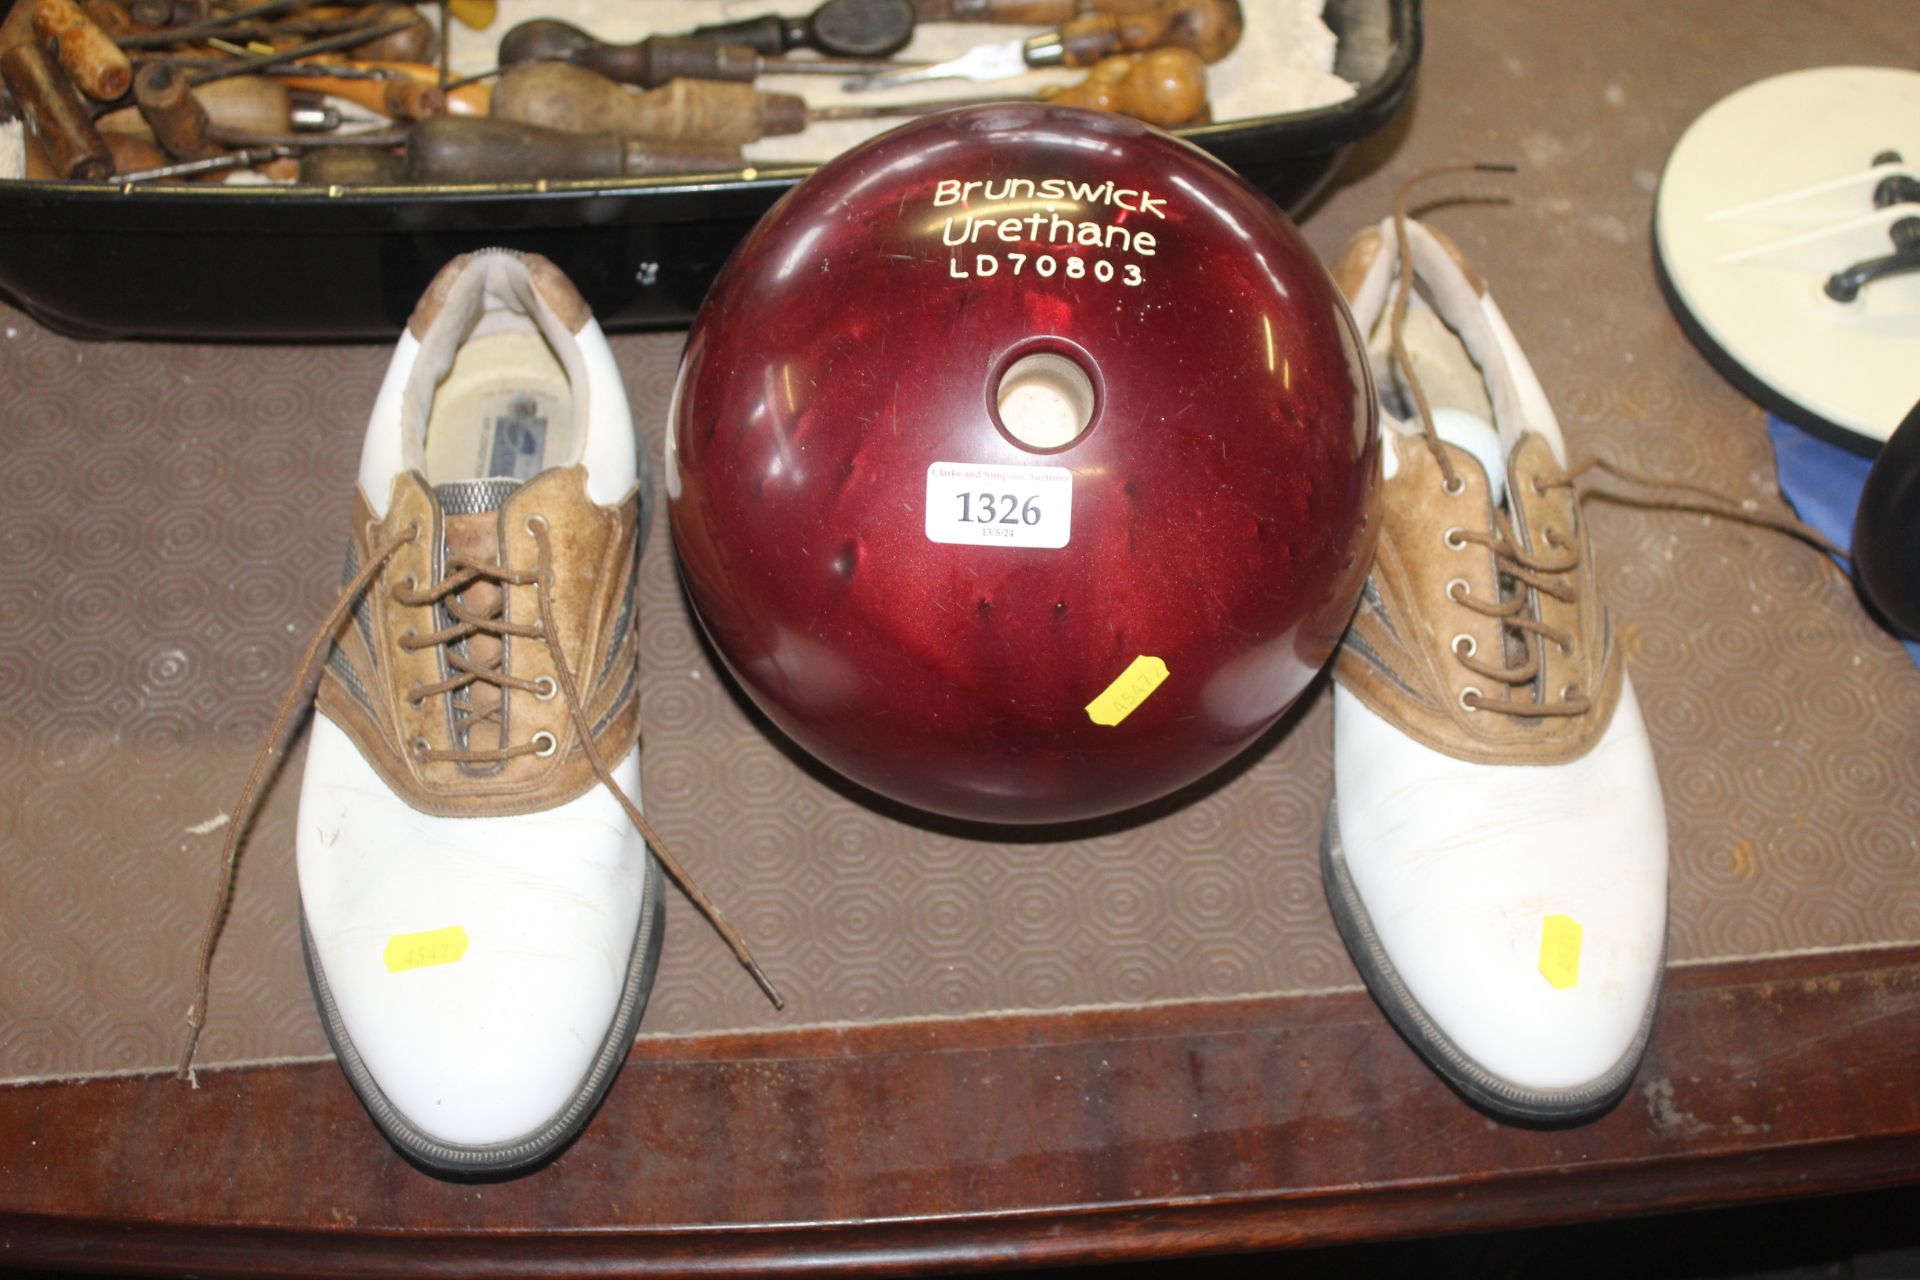 A Brunswick Urethane "Twister" bowling ball (Size